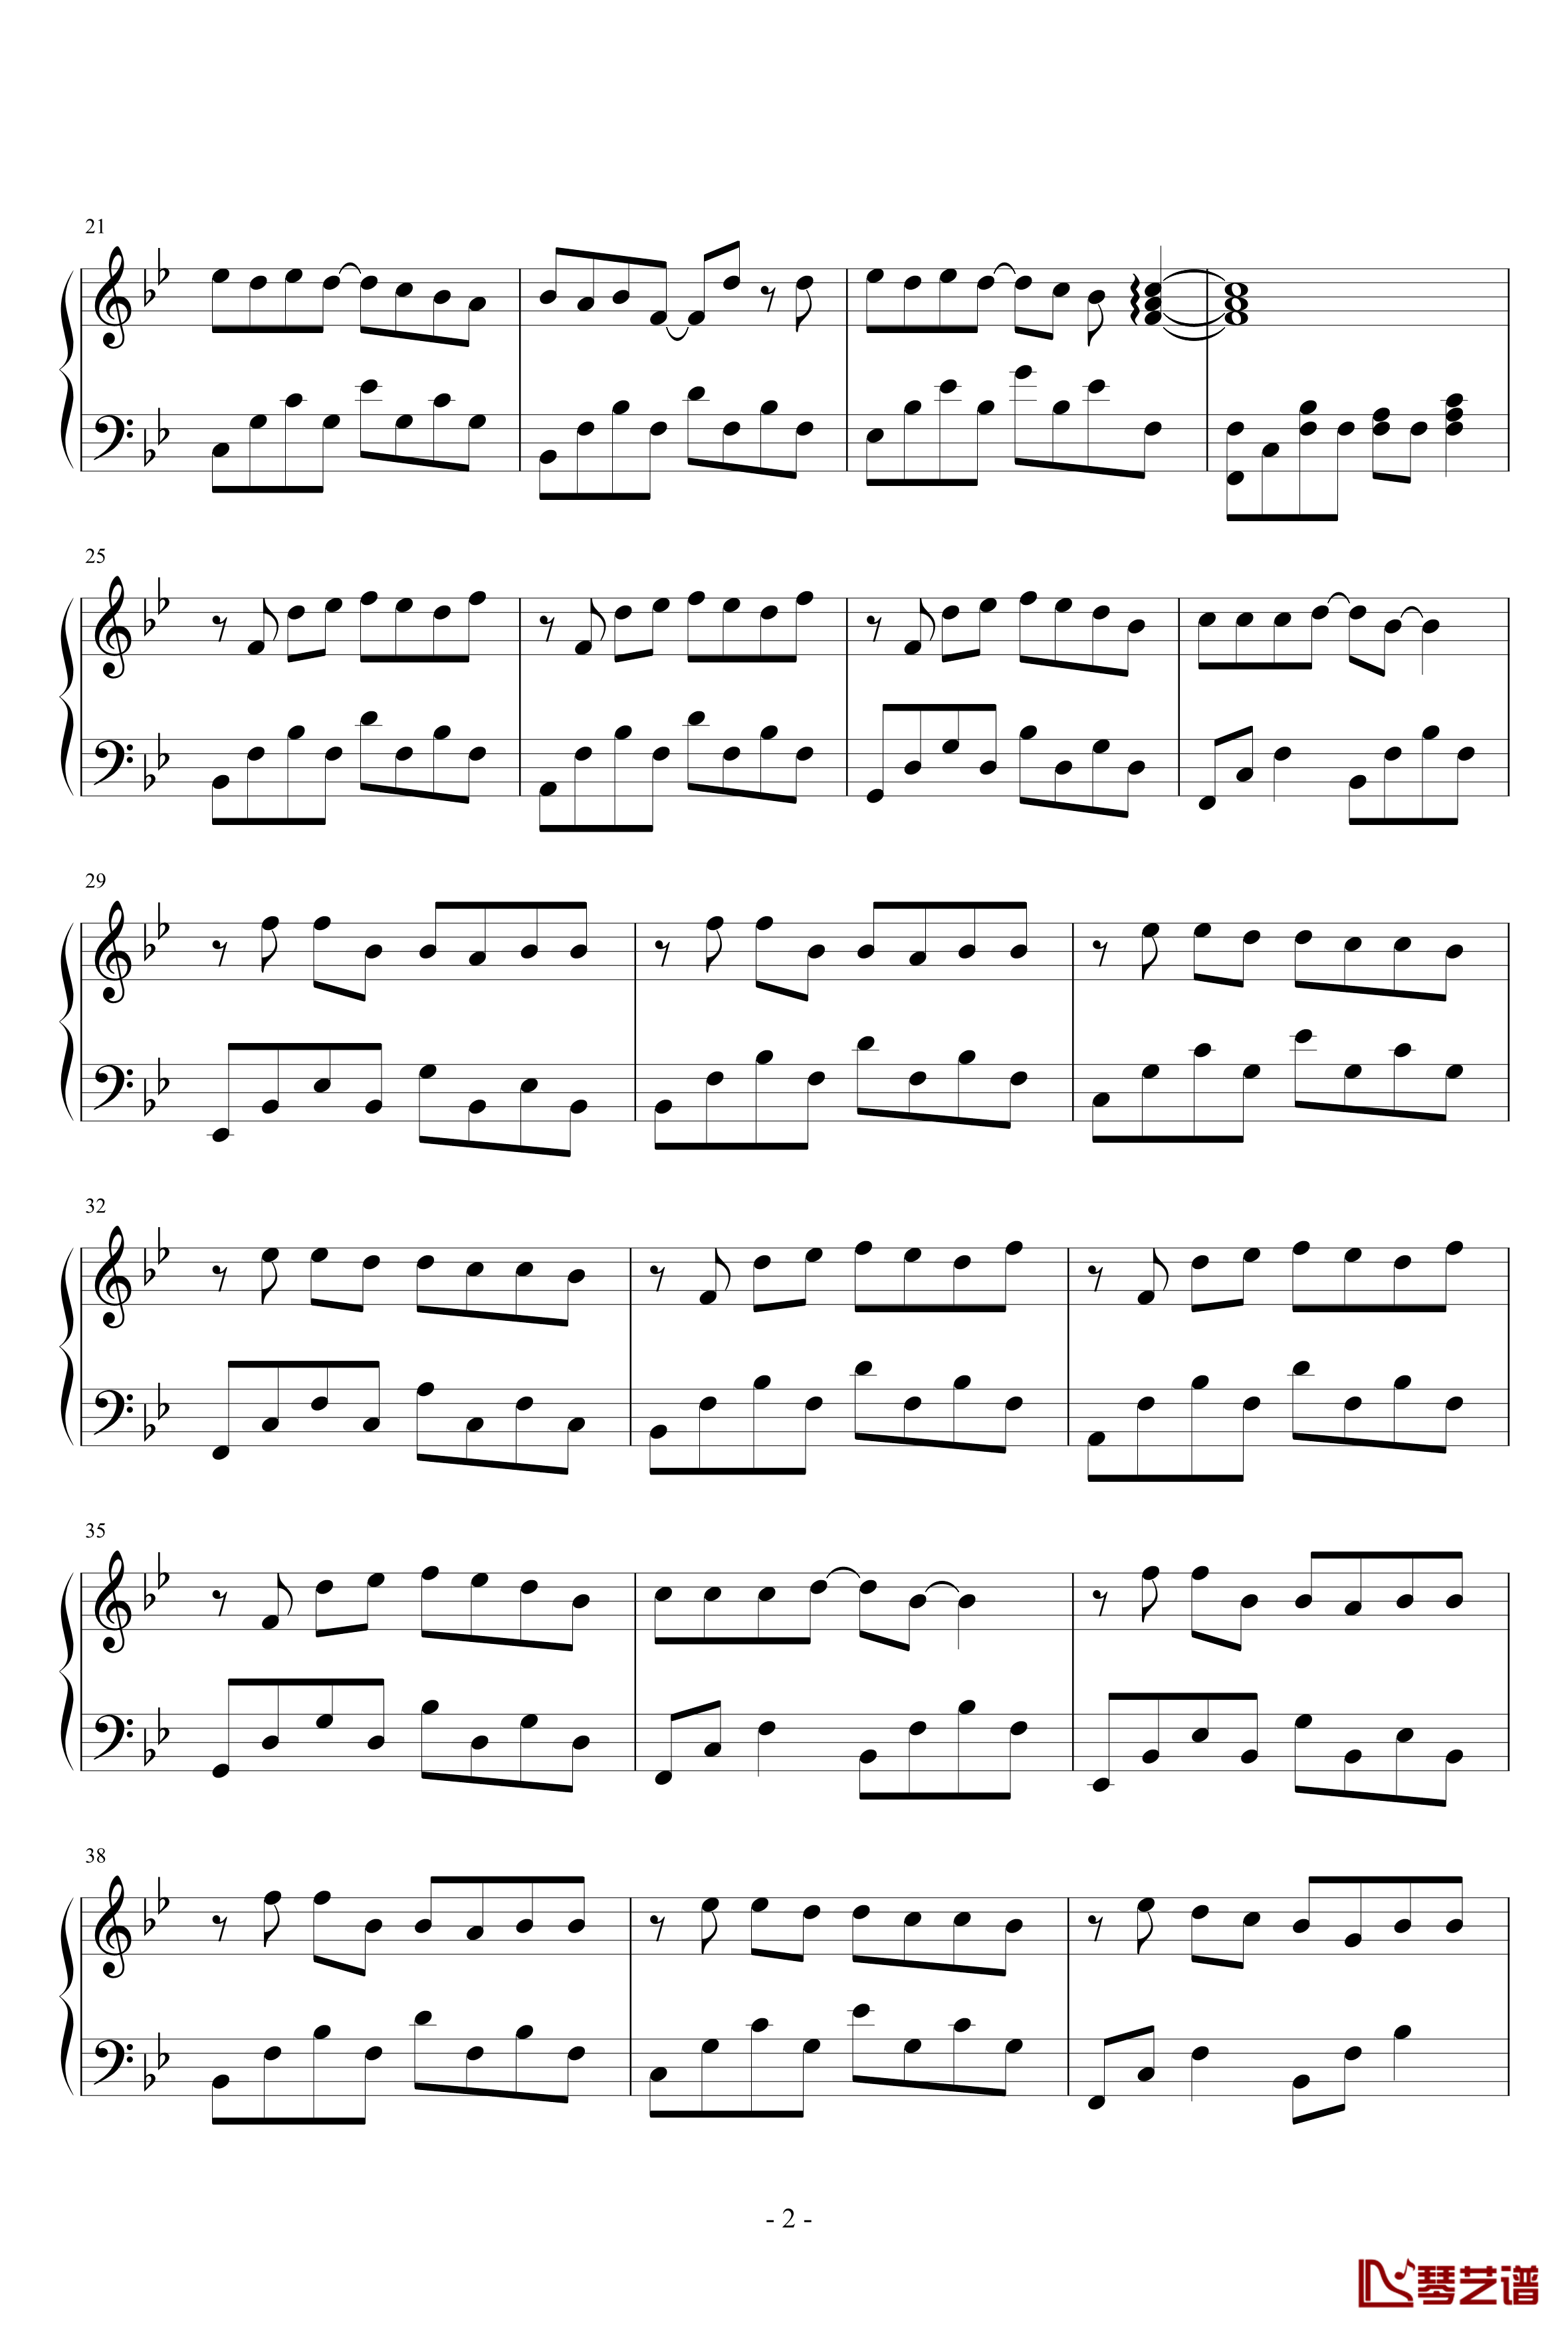 安静钢琴谱-简易版-周杰伦2